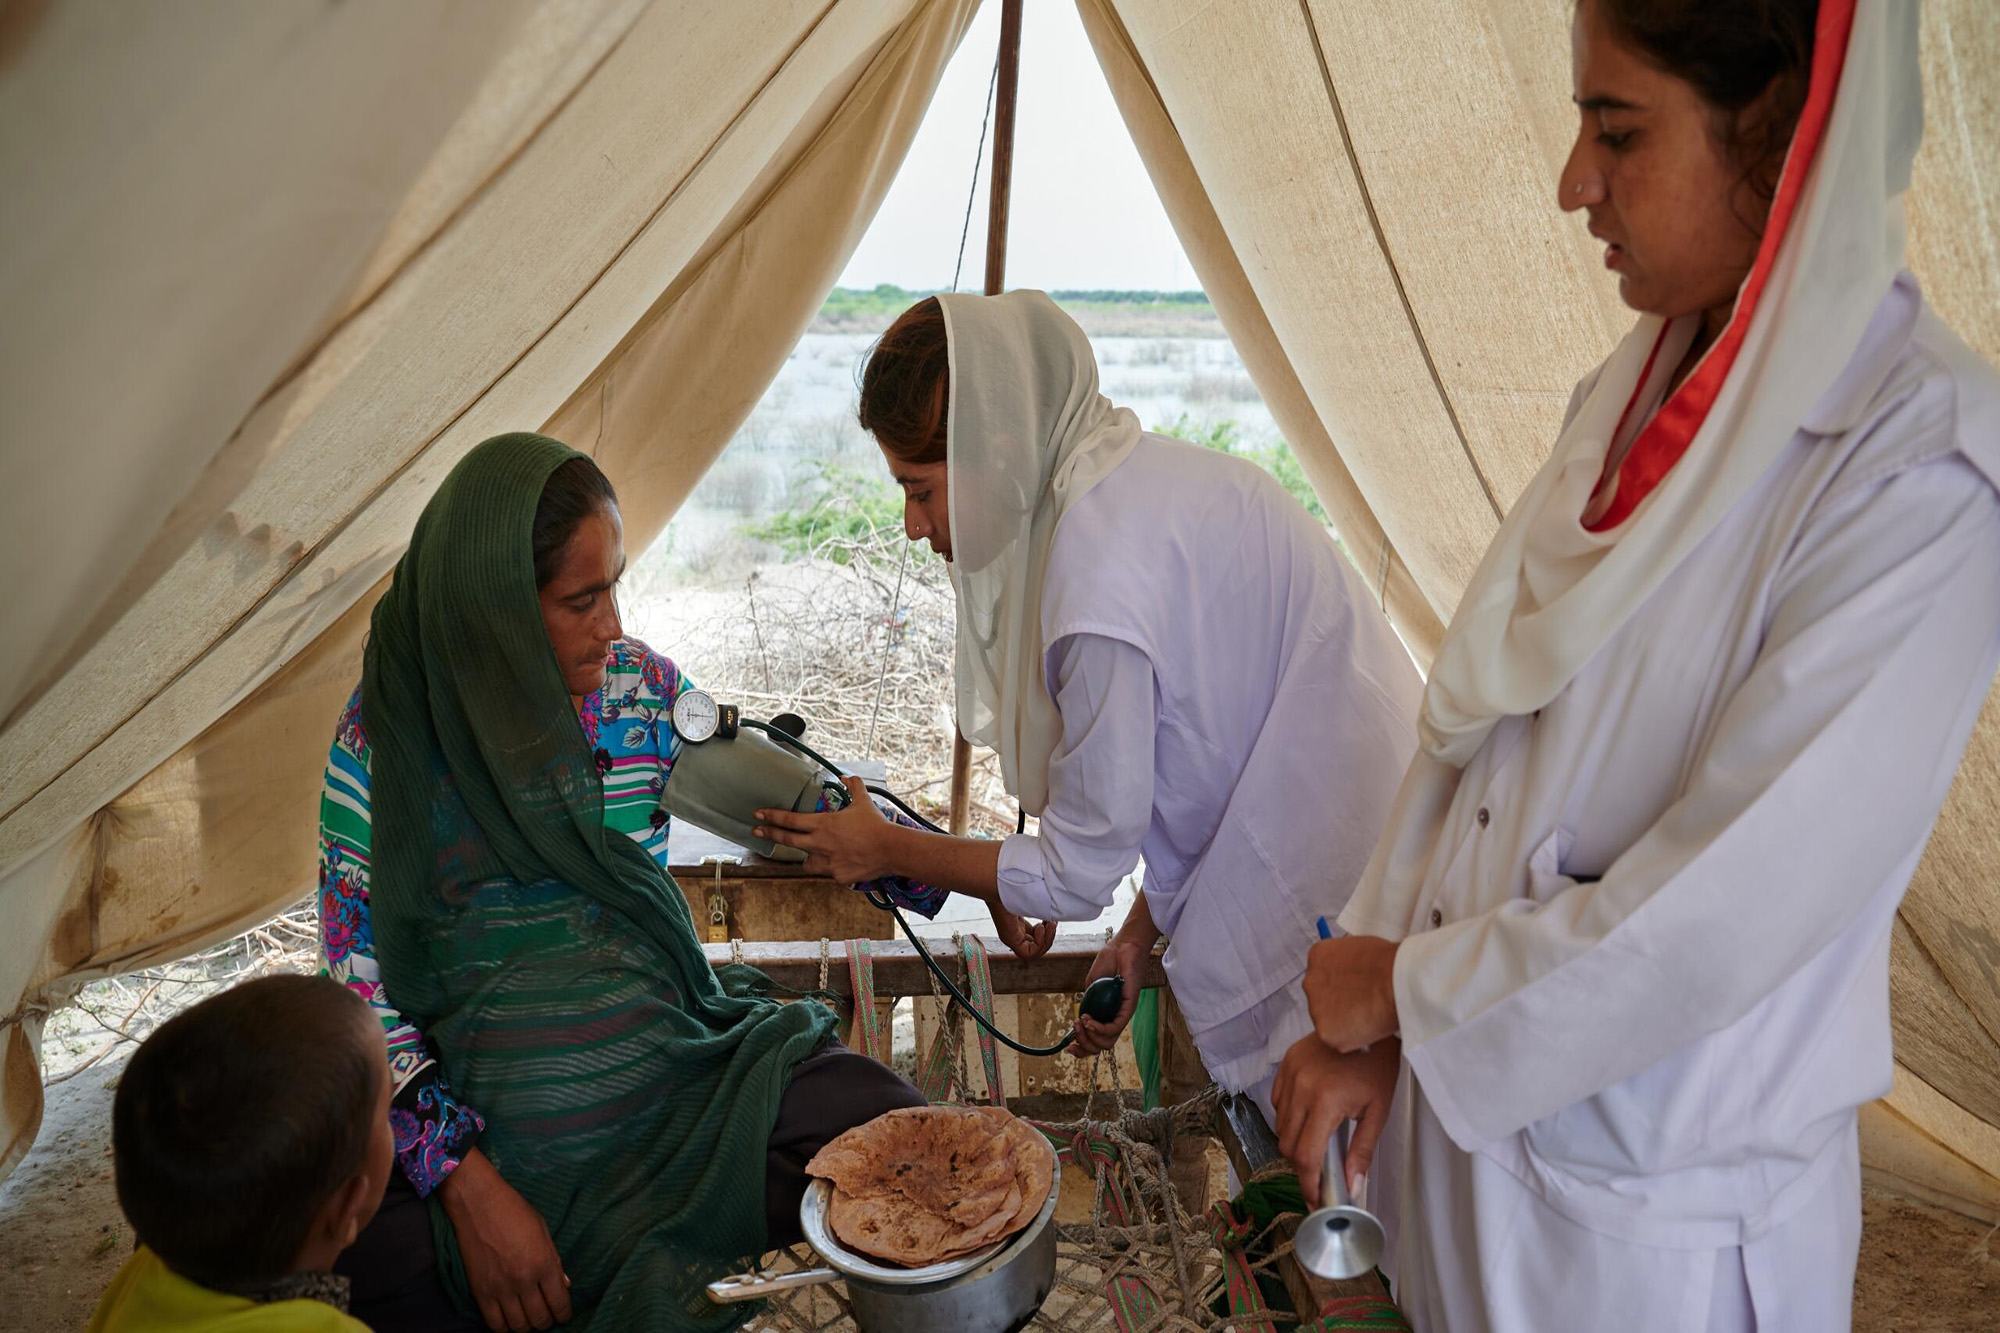 تقدم العيادات الصحية المتنقلة التي يدعمها صندوق الأمم المتحدة للسكان خدمات بالغة الأهمية للنساء والأطفال خلال الأزمة في باكستان.